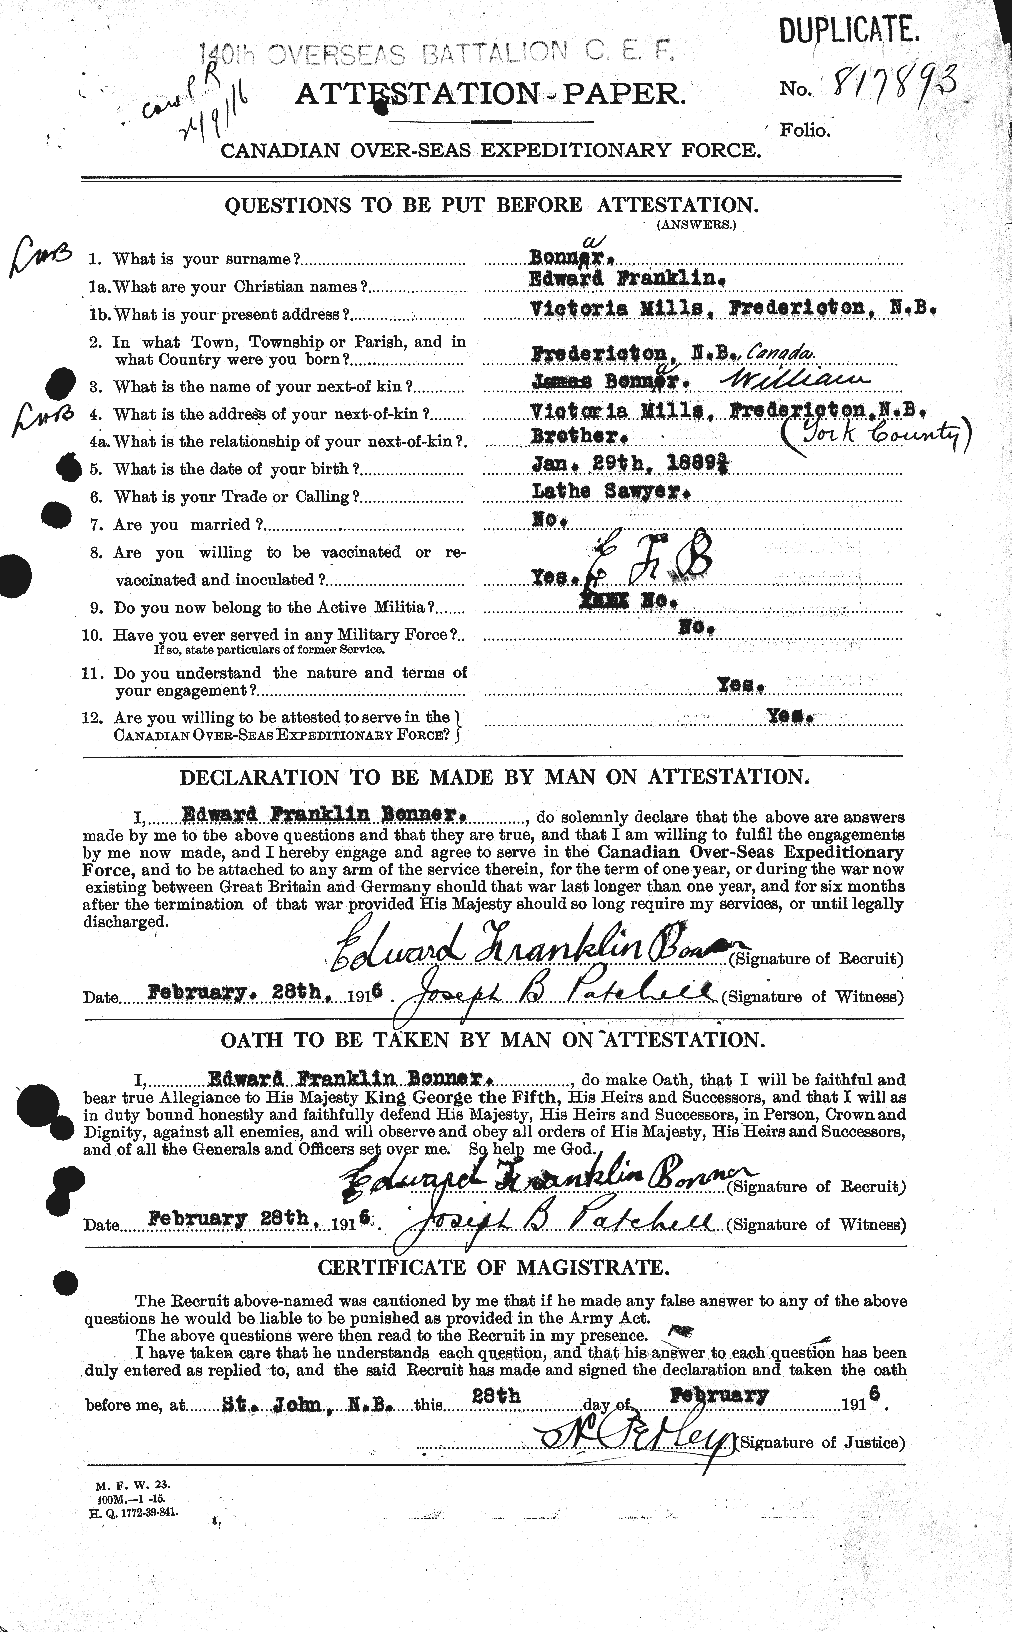 Dossiers du Personnel de la Première Guerre mondiale - CEC 250704a